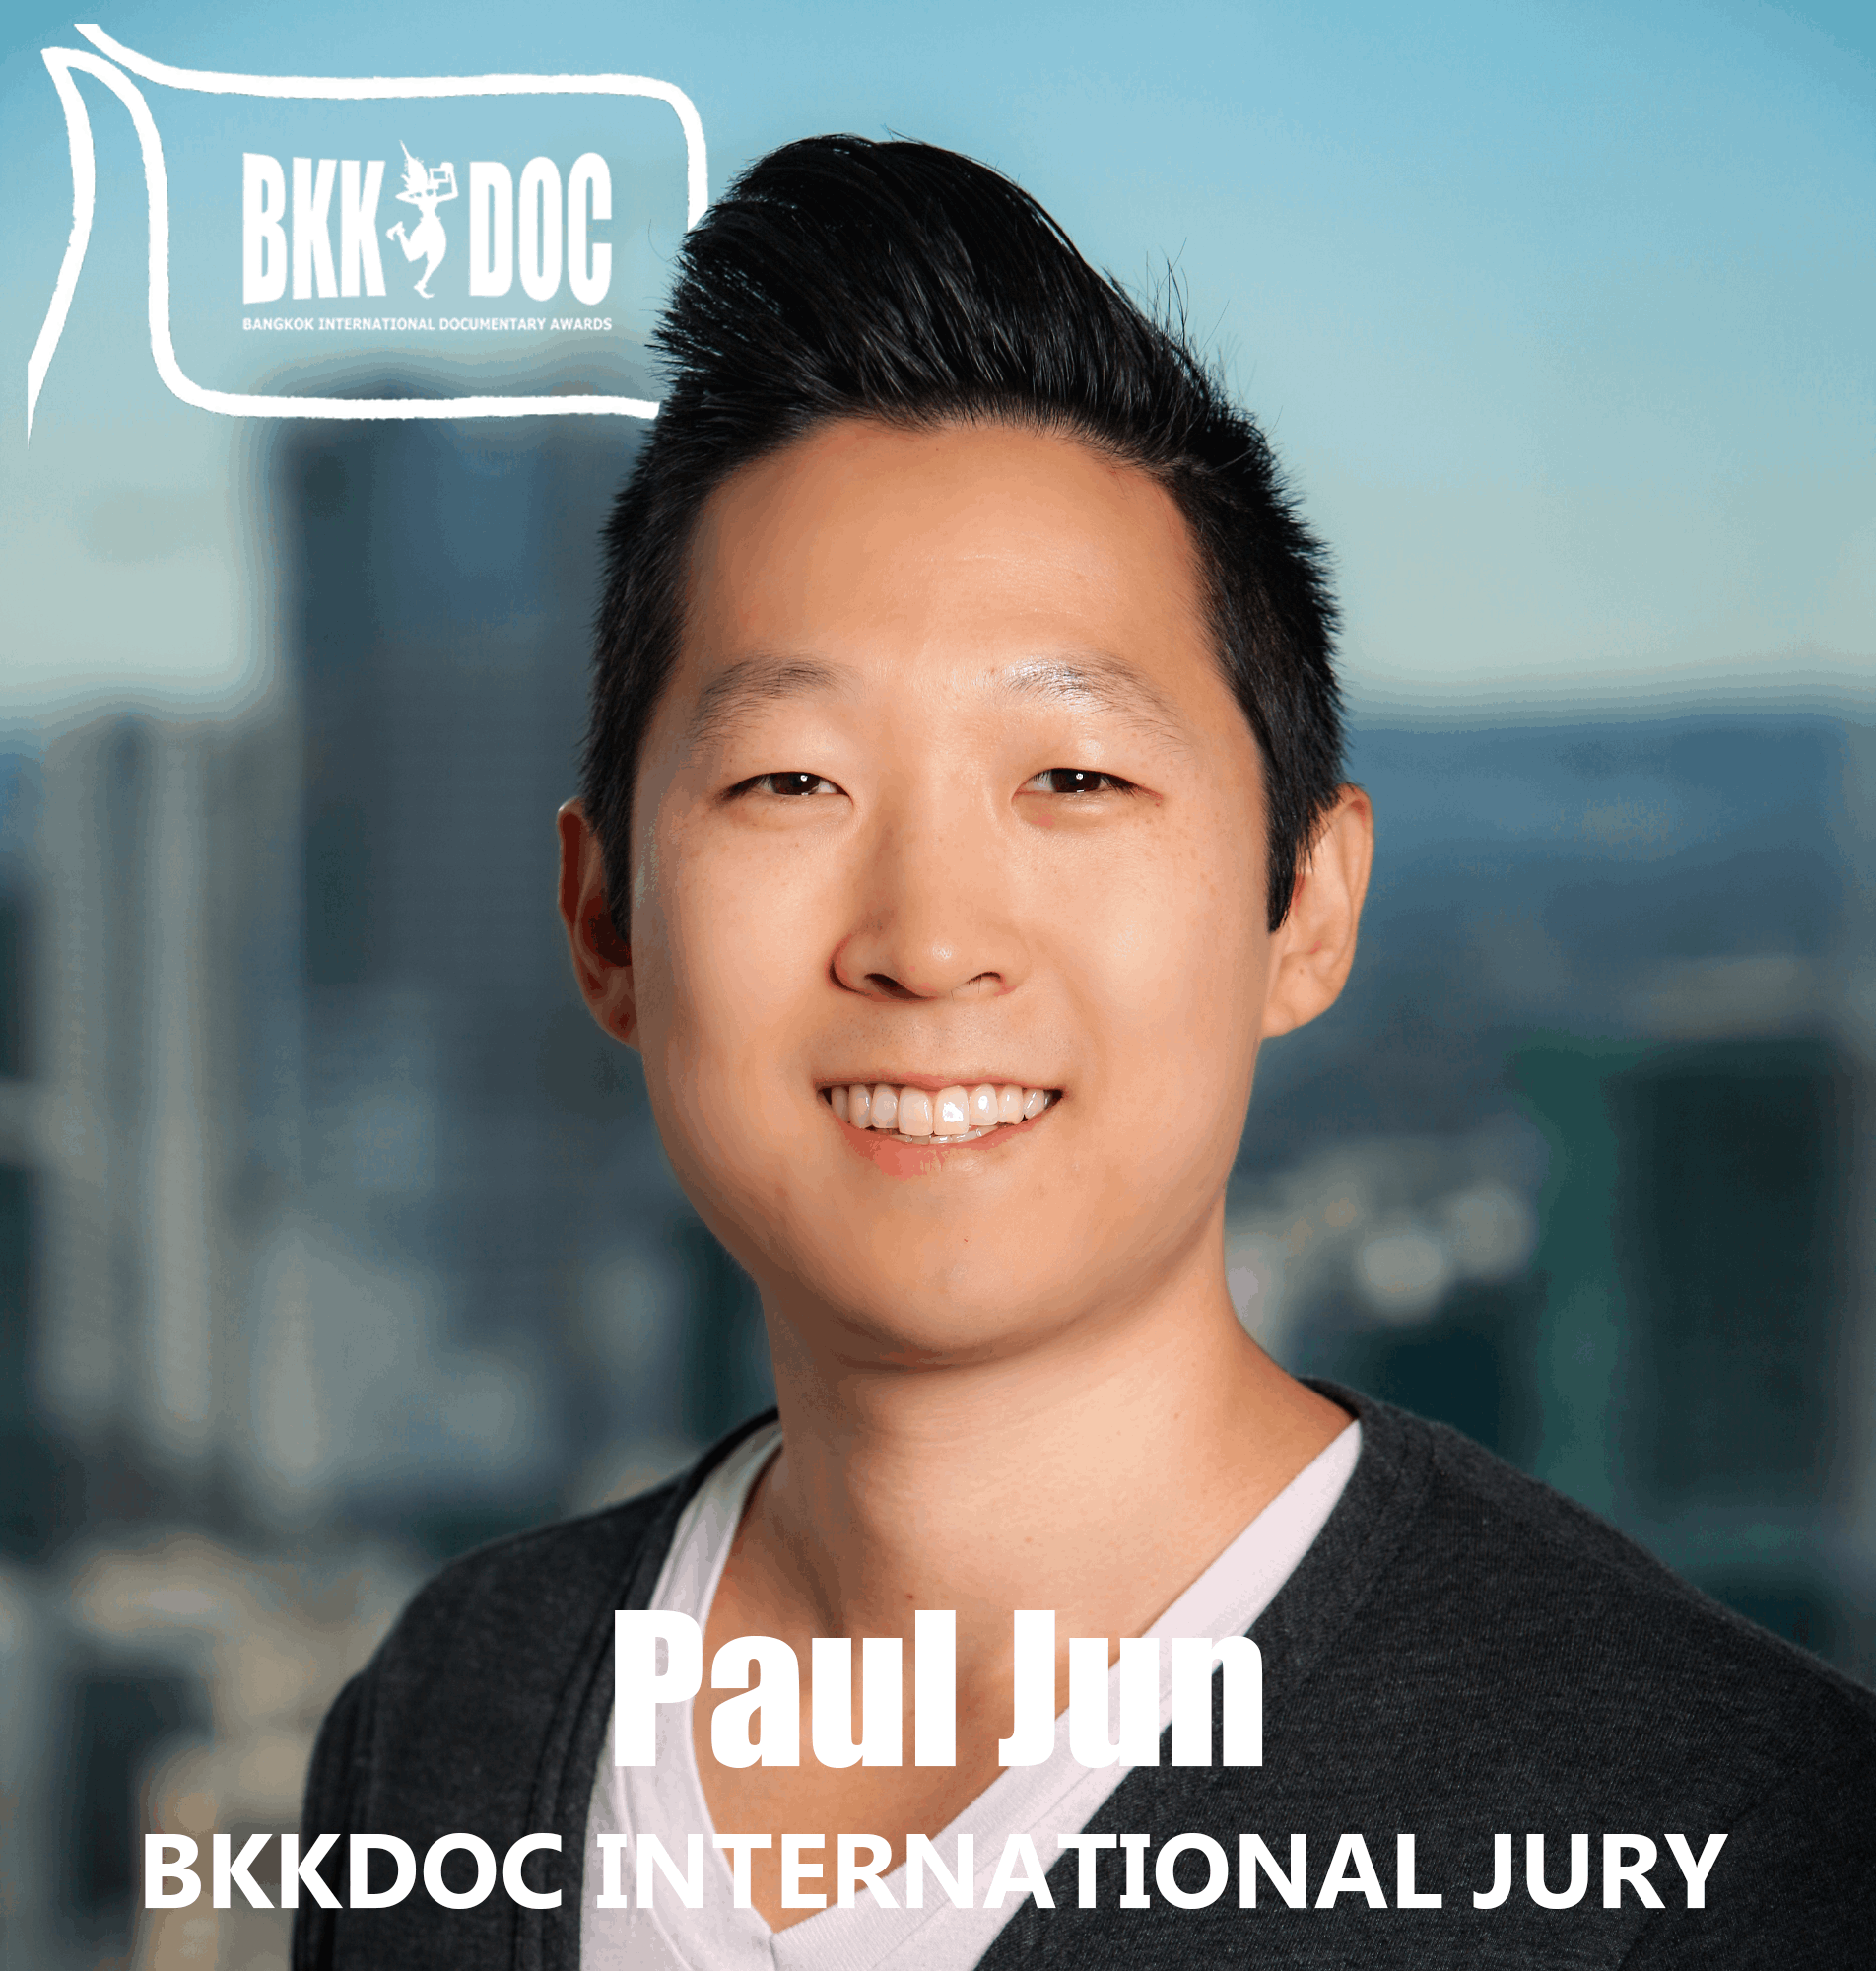 Paul Jun - International Jury Bkk Doc